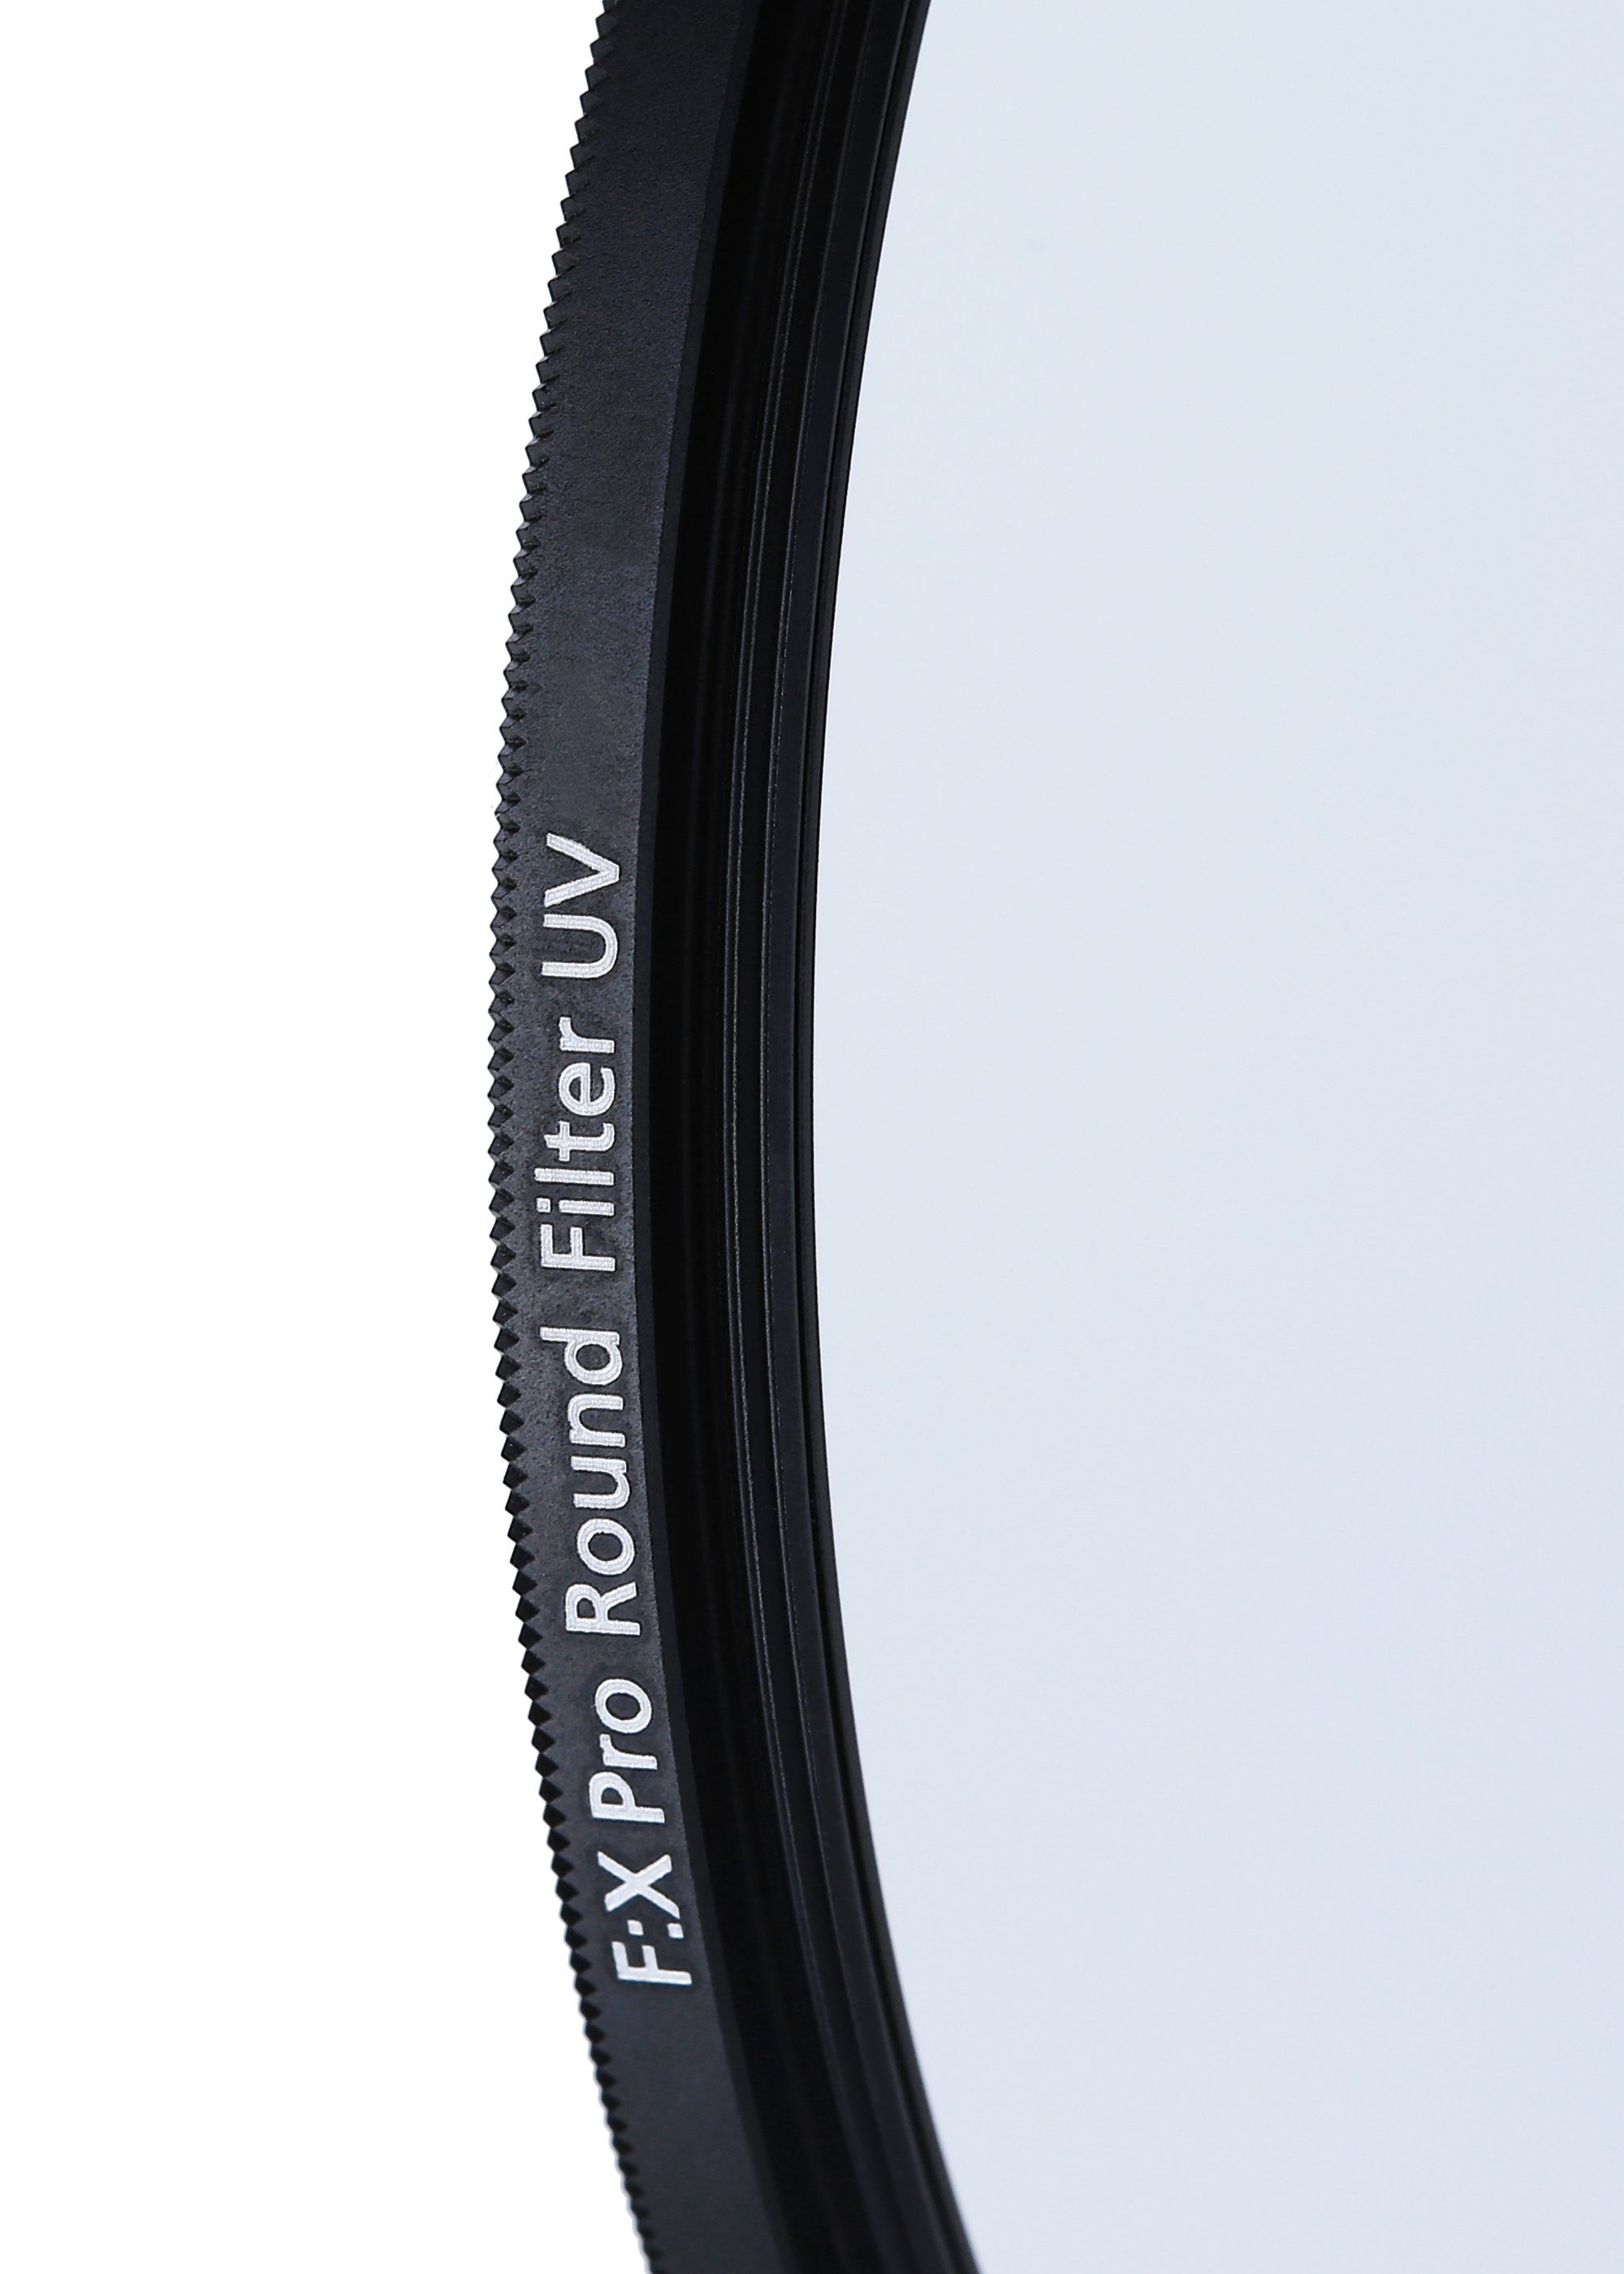 Objektivzubehör F:X mm (aus Rollei UV Filter Pro Rollei 67 Gorilla-Glas) robustem